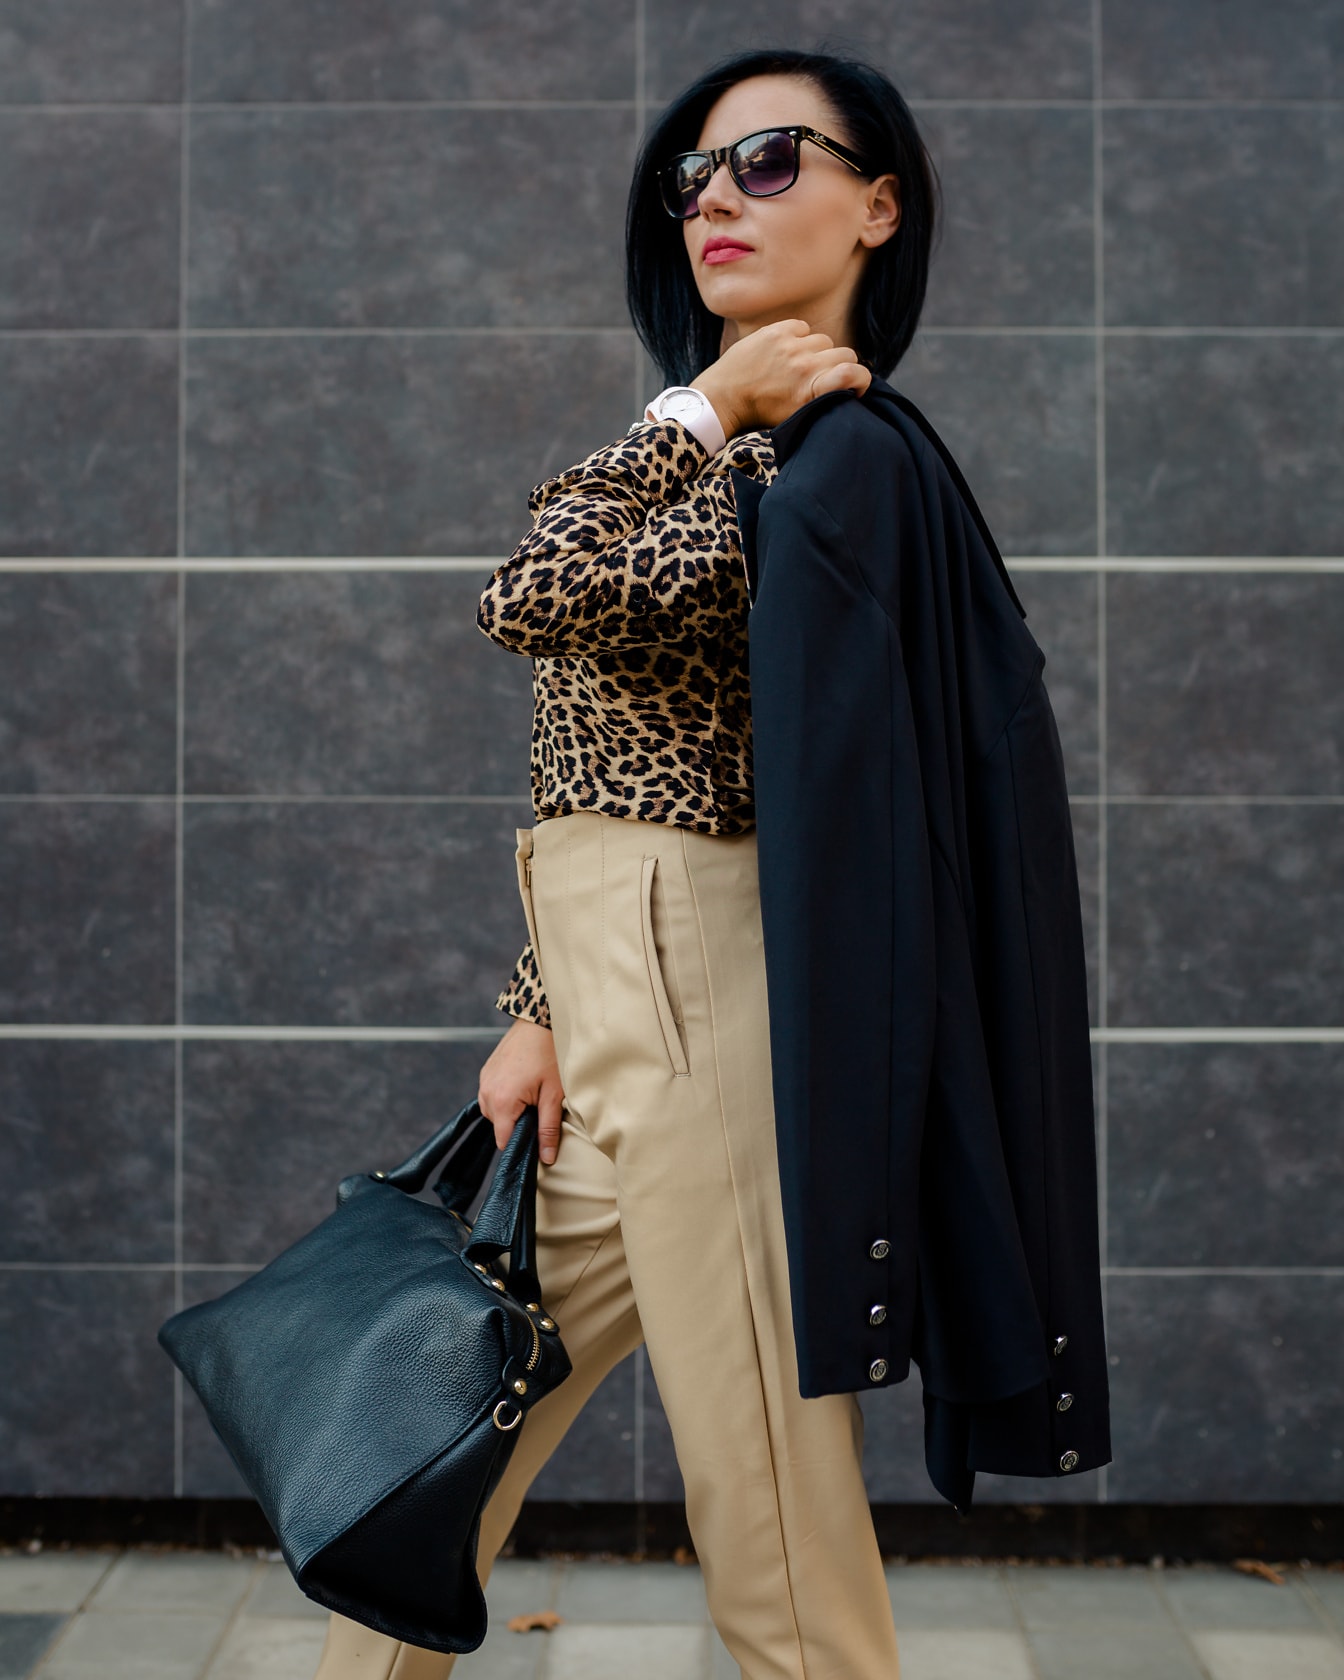 Forretningskvinne i skjorte med leopardtrykk og fasjonable bukser som holder en svart veske